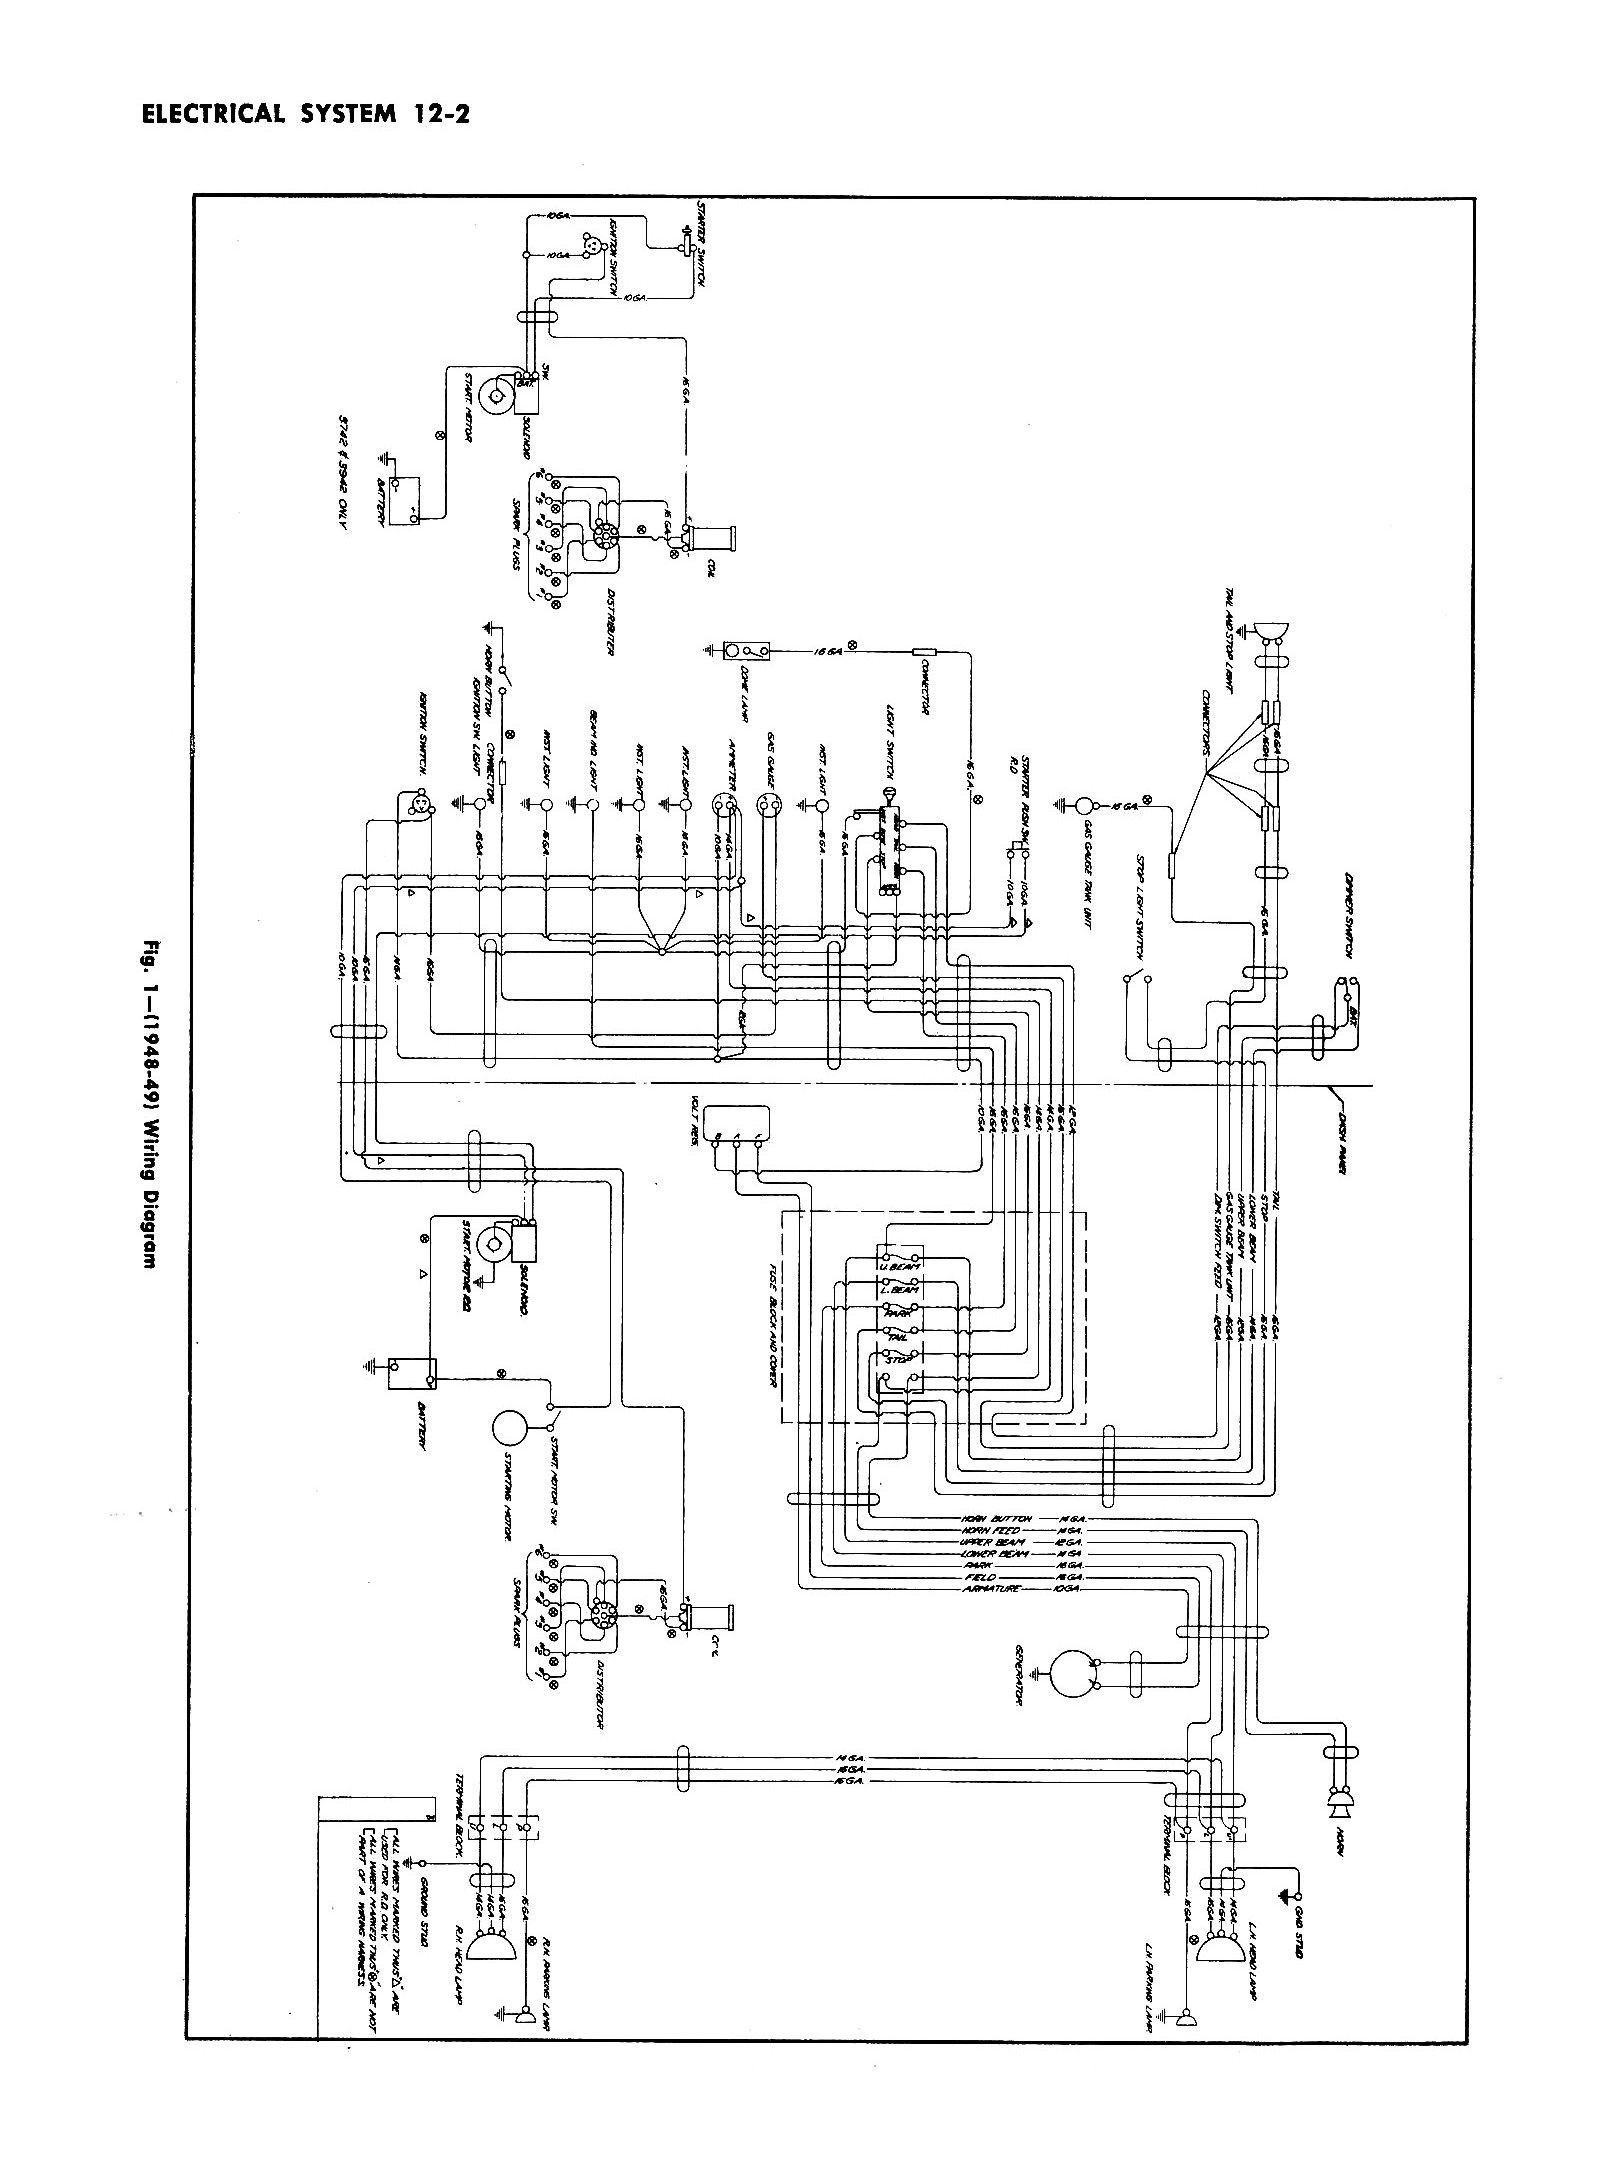 2004 Chevy Silverado Wiring Diagram 2018 Chevy Wiring Diagrams